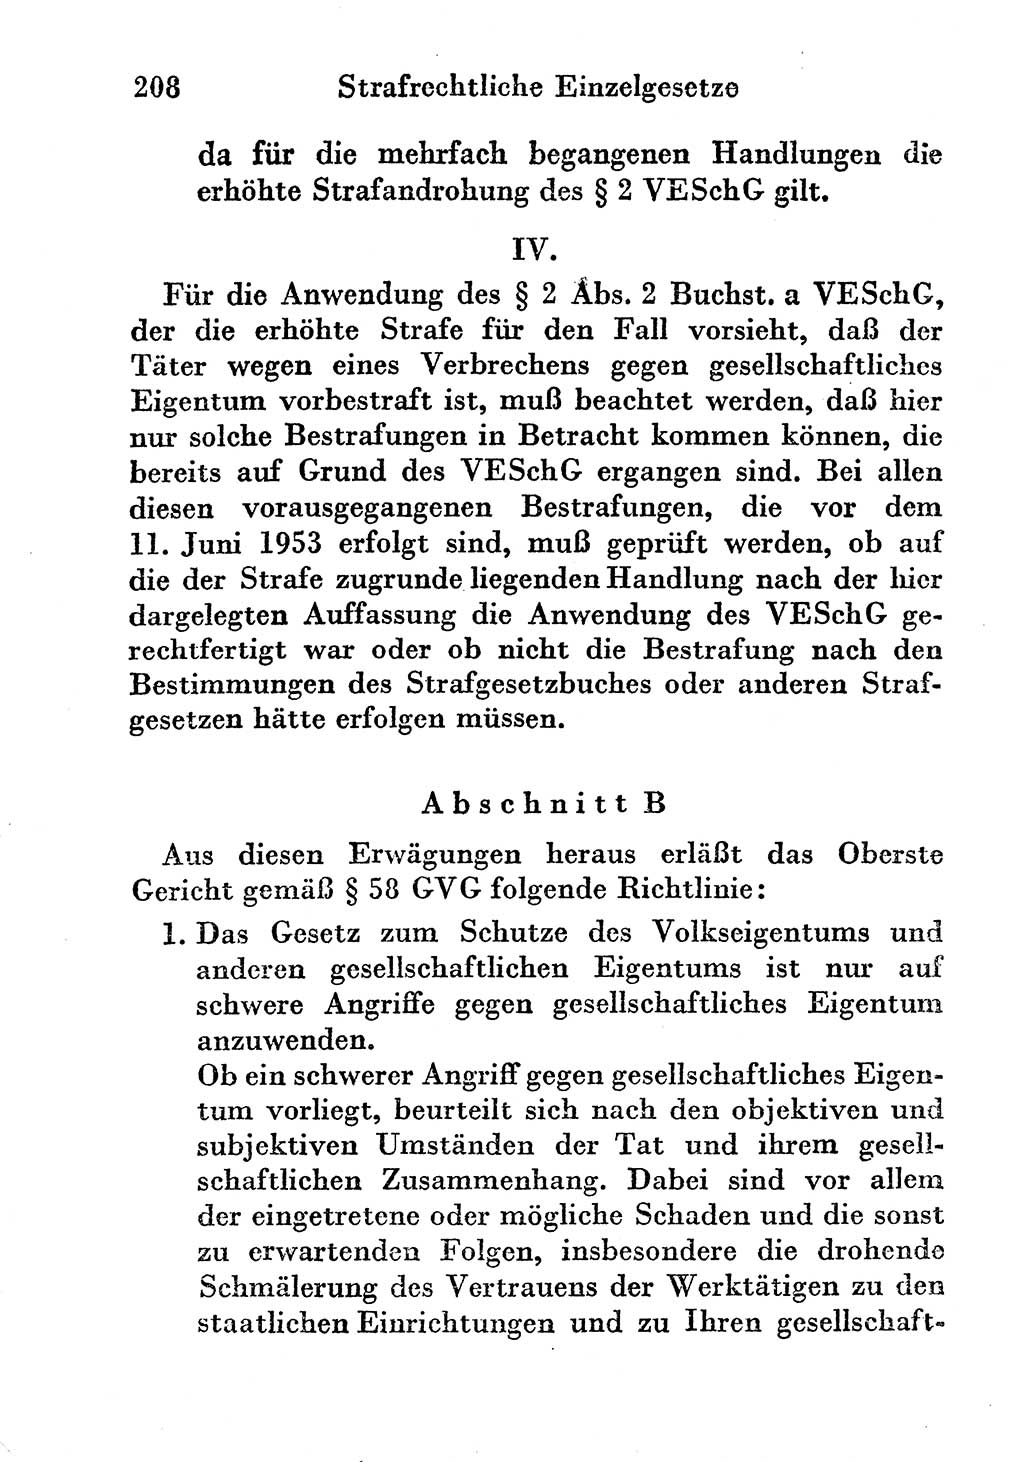 Strafgesetzbuch (StGB) und andere Strafgesetze [Deutsche Demokratische Republik (DDR)] 1956, Seite 208 (StGB Strafges. DDR 1956, S. 208)